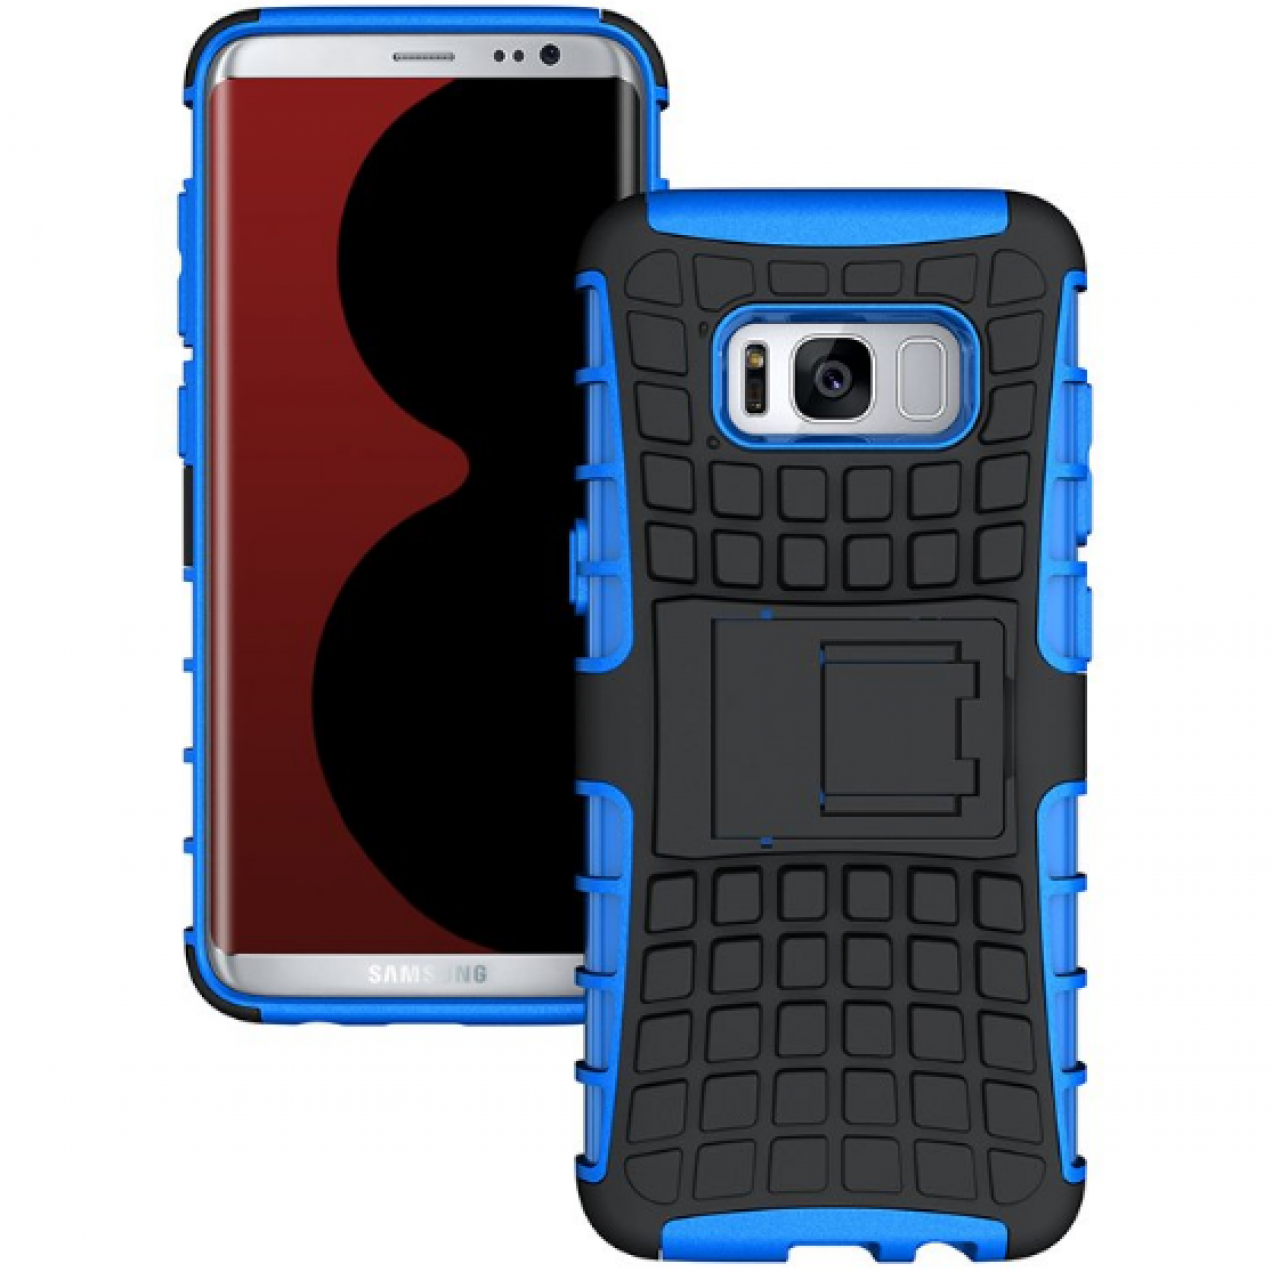 Θήκη Samsung Galaxy S8 (G950) Armor Σιλικόνης TPU με Επένδυση Σκληρή Πλαστική PC Καουτσούκ και σταντ οριζόντιας στήριξης - 3898 - Μπλε - OEM